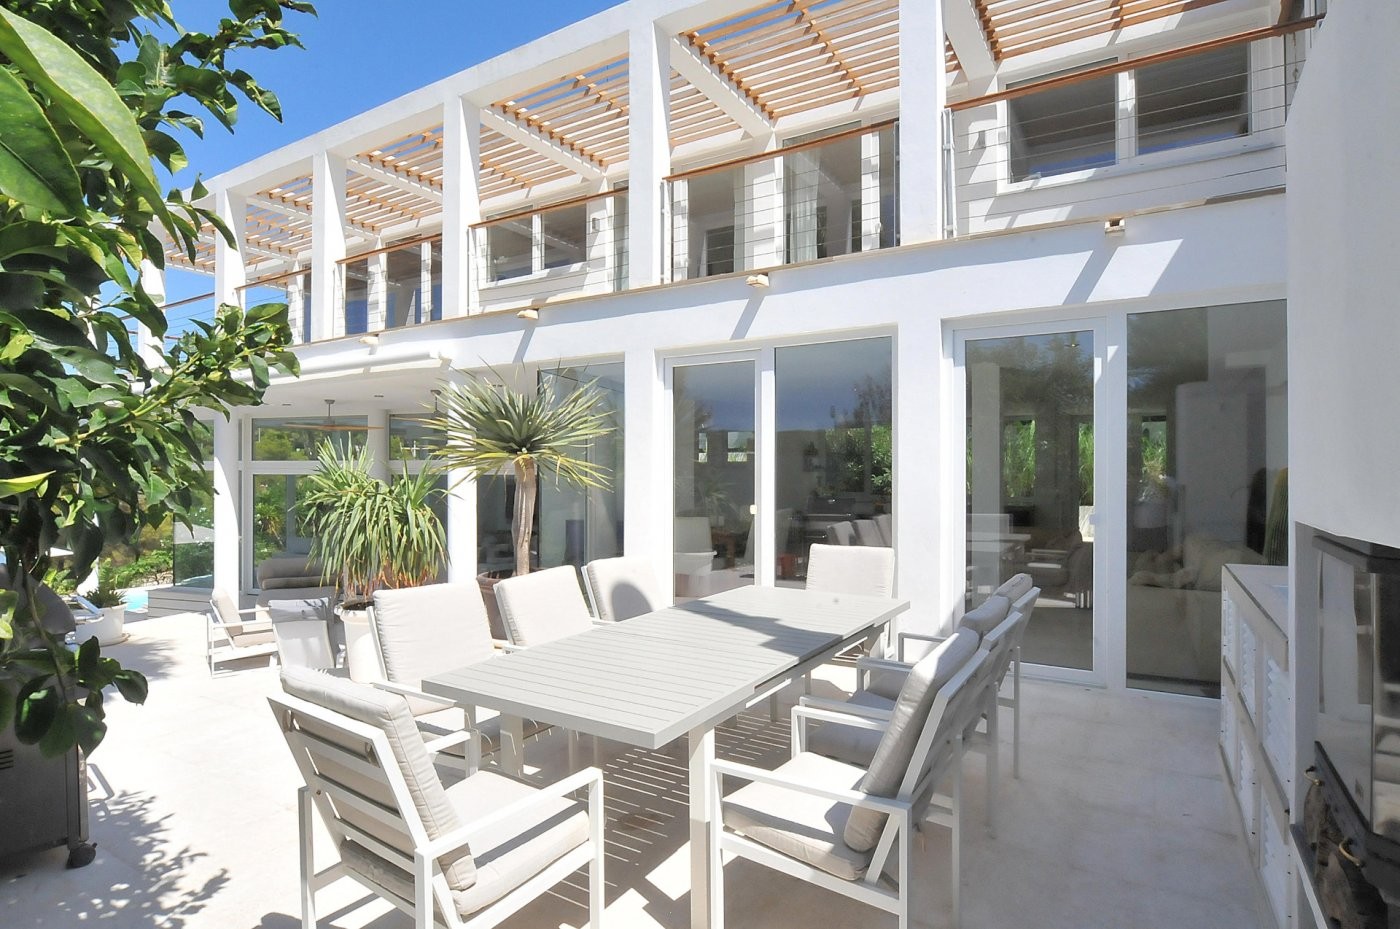 Villa de diseño moderno abierta al paisaje en la tranquila zona residencial de Sol de Mallorca